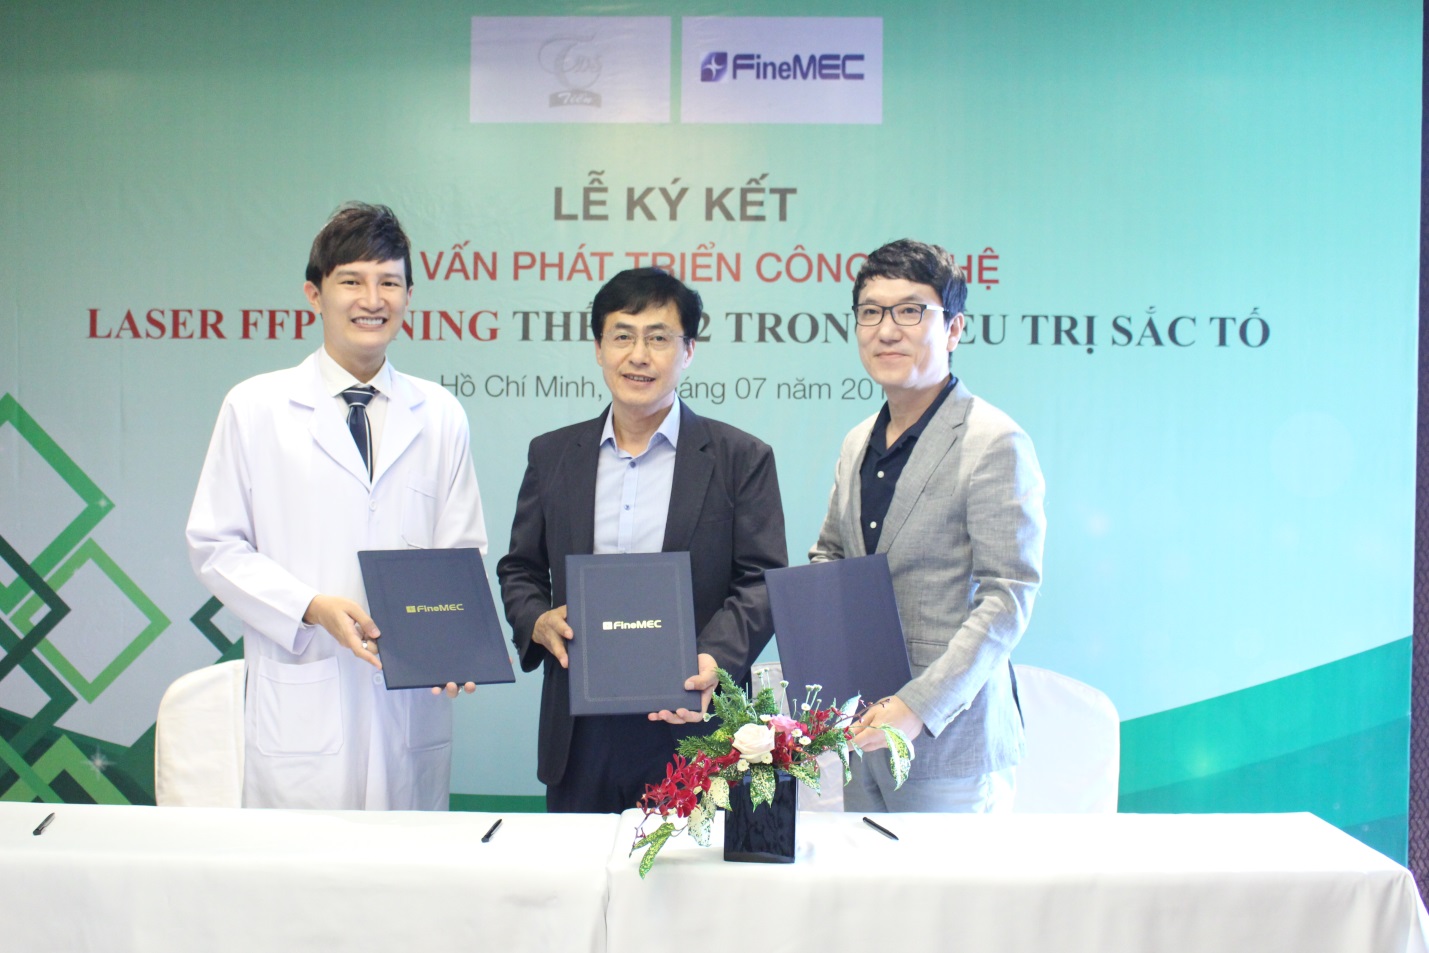 Tập đoàn FINEMEC (Hàn Quốc) mời Dược sĩ Tiến đảm nhiệm vai trò cố vấn phát triển công nghệ